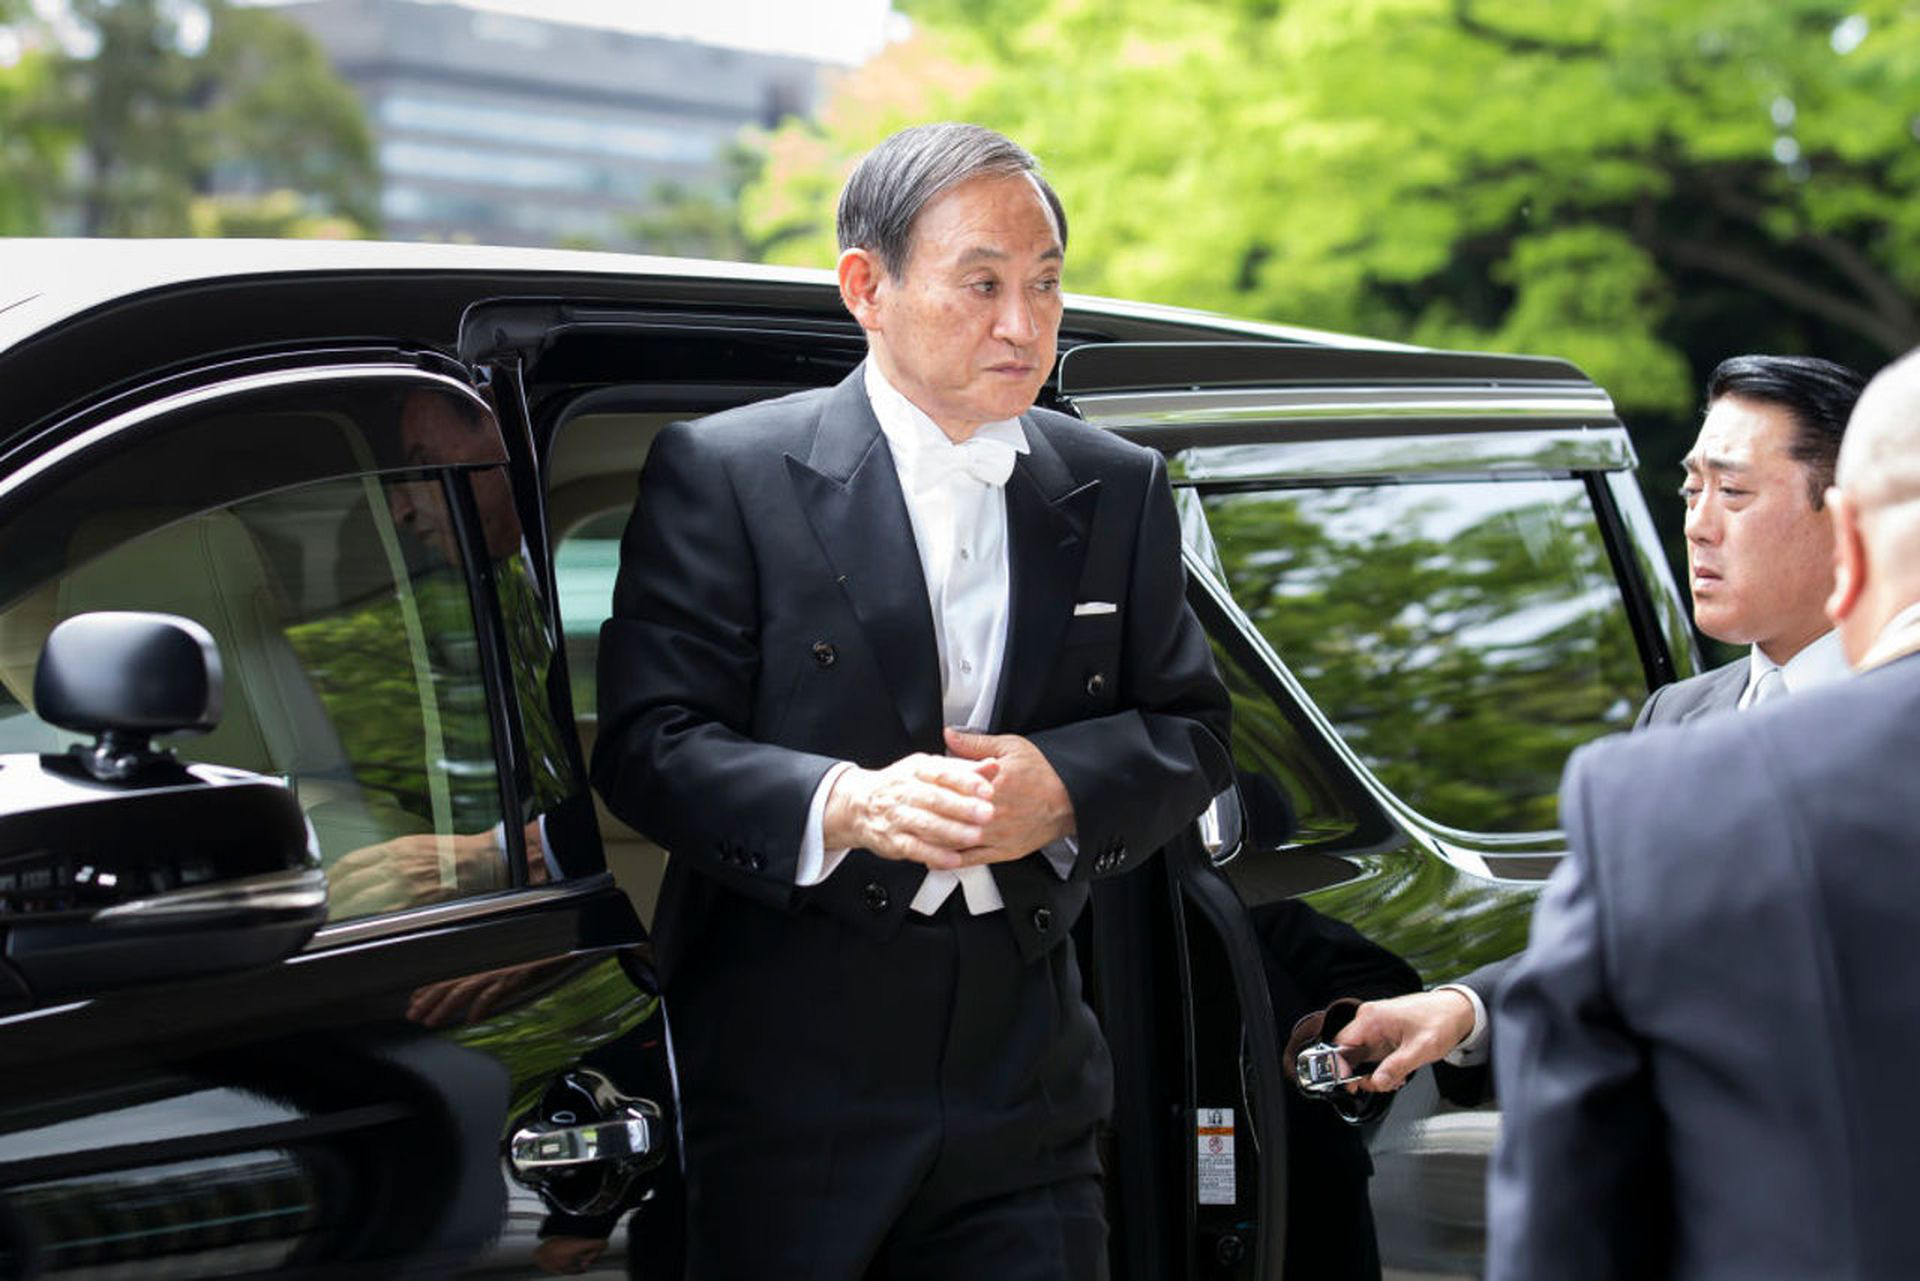 Cuộc sống lành mạnh của chính trị gia 71 tuổi sắp trở thành tân Thủ tướng Nhật Bản: Sáng đi bộ, đêm gập bụng, quyết tâm giảm 14 kg để tránh bệnh tật - Ảnh 3.